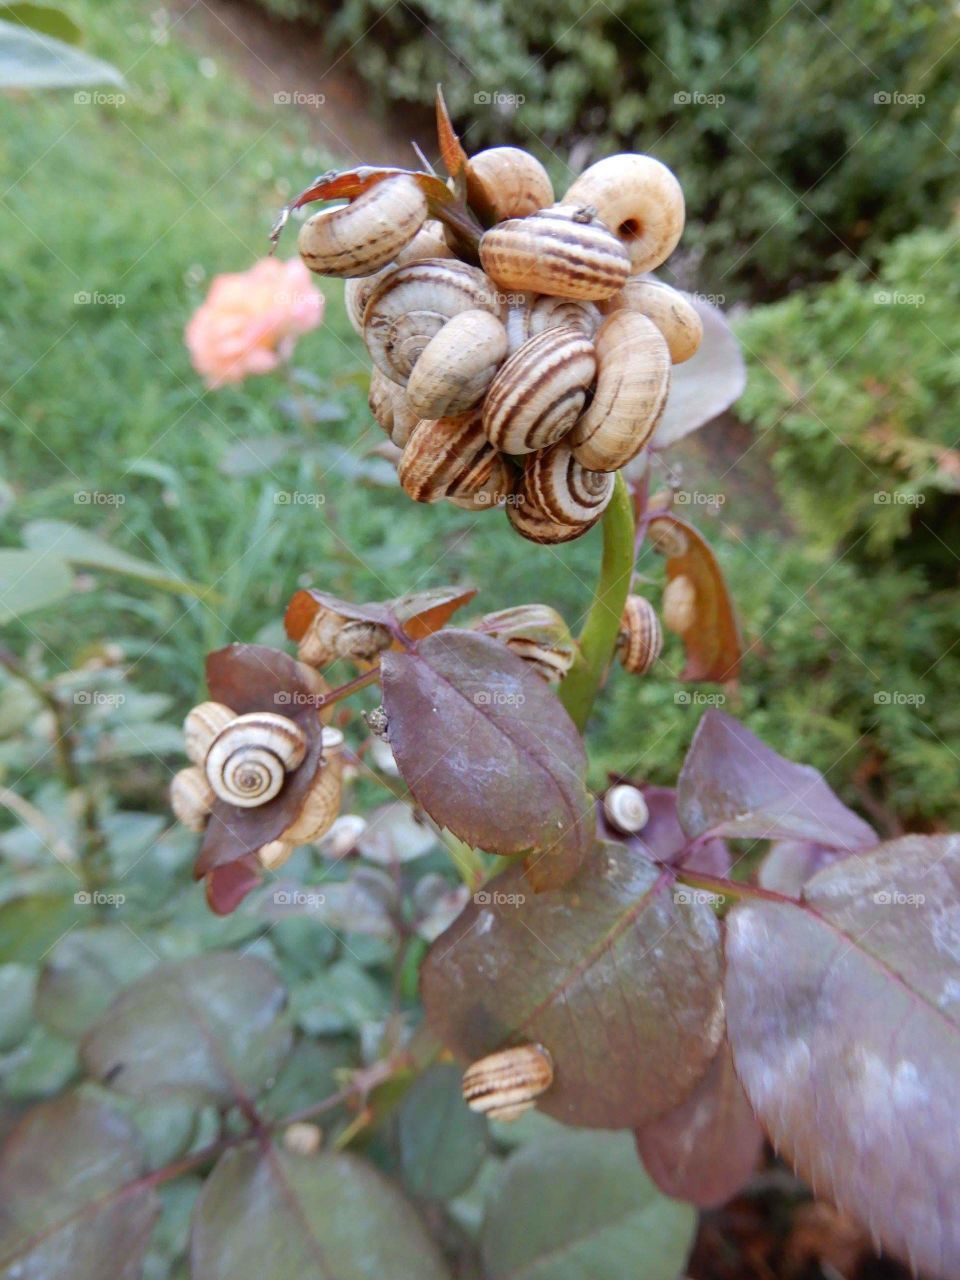 snails on leaves